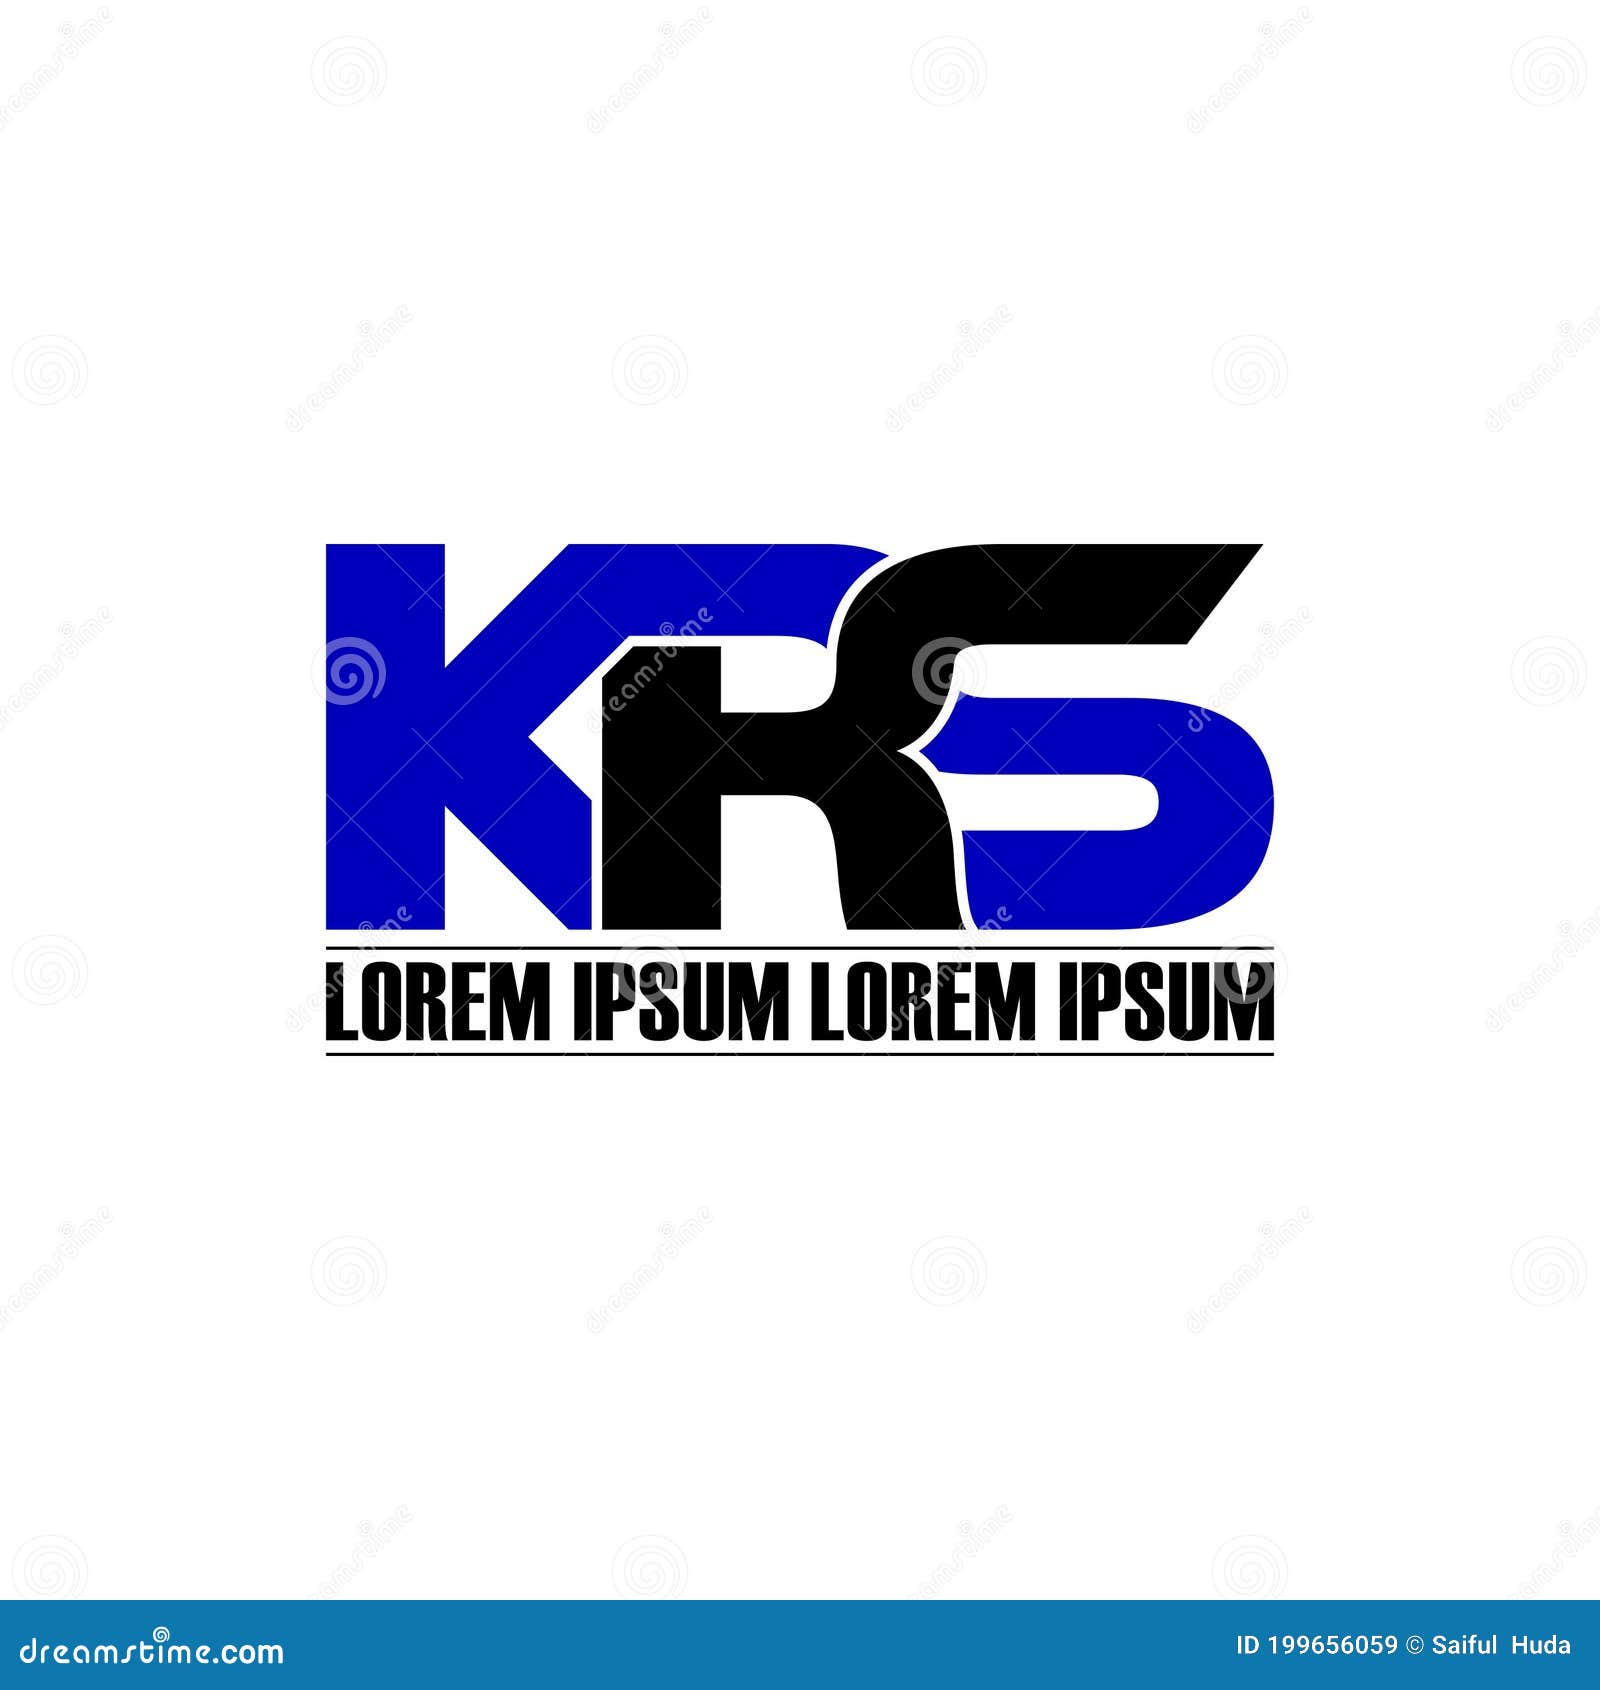 Logo krs